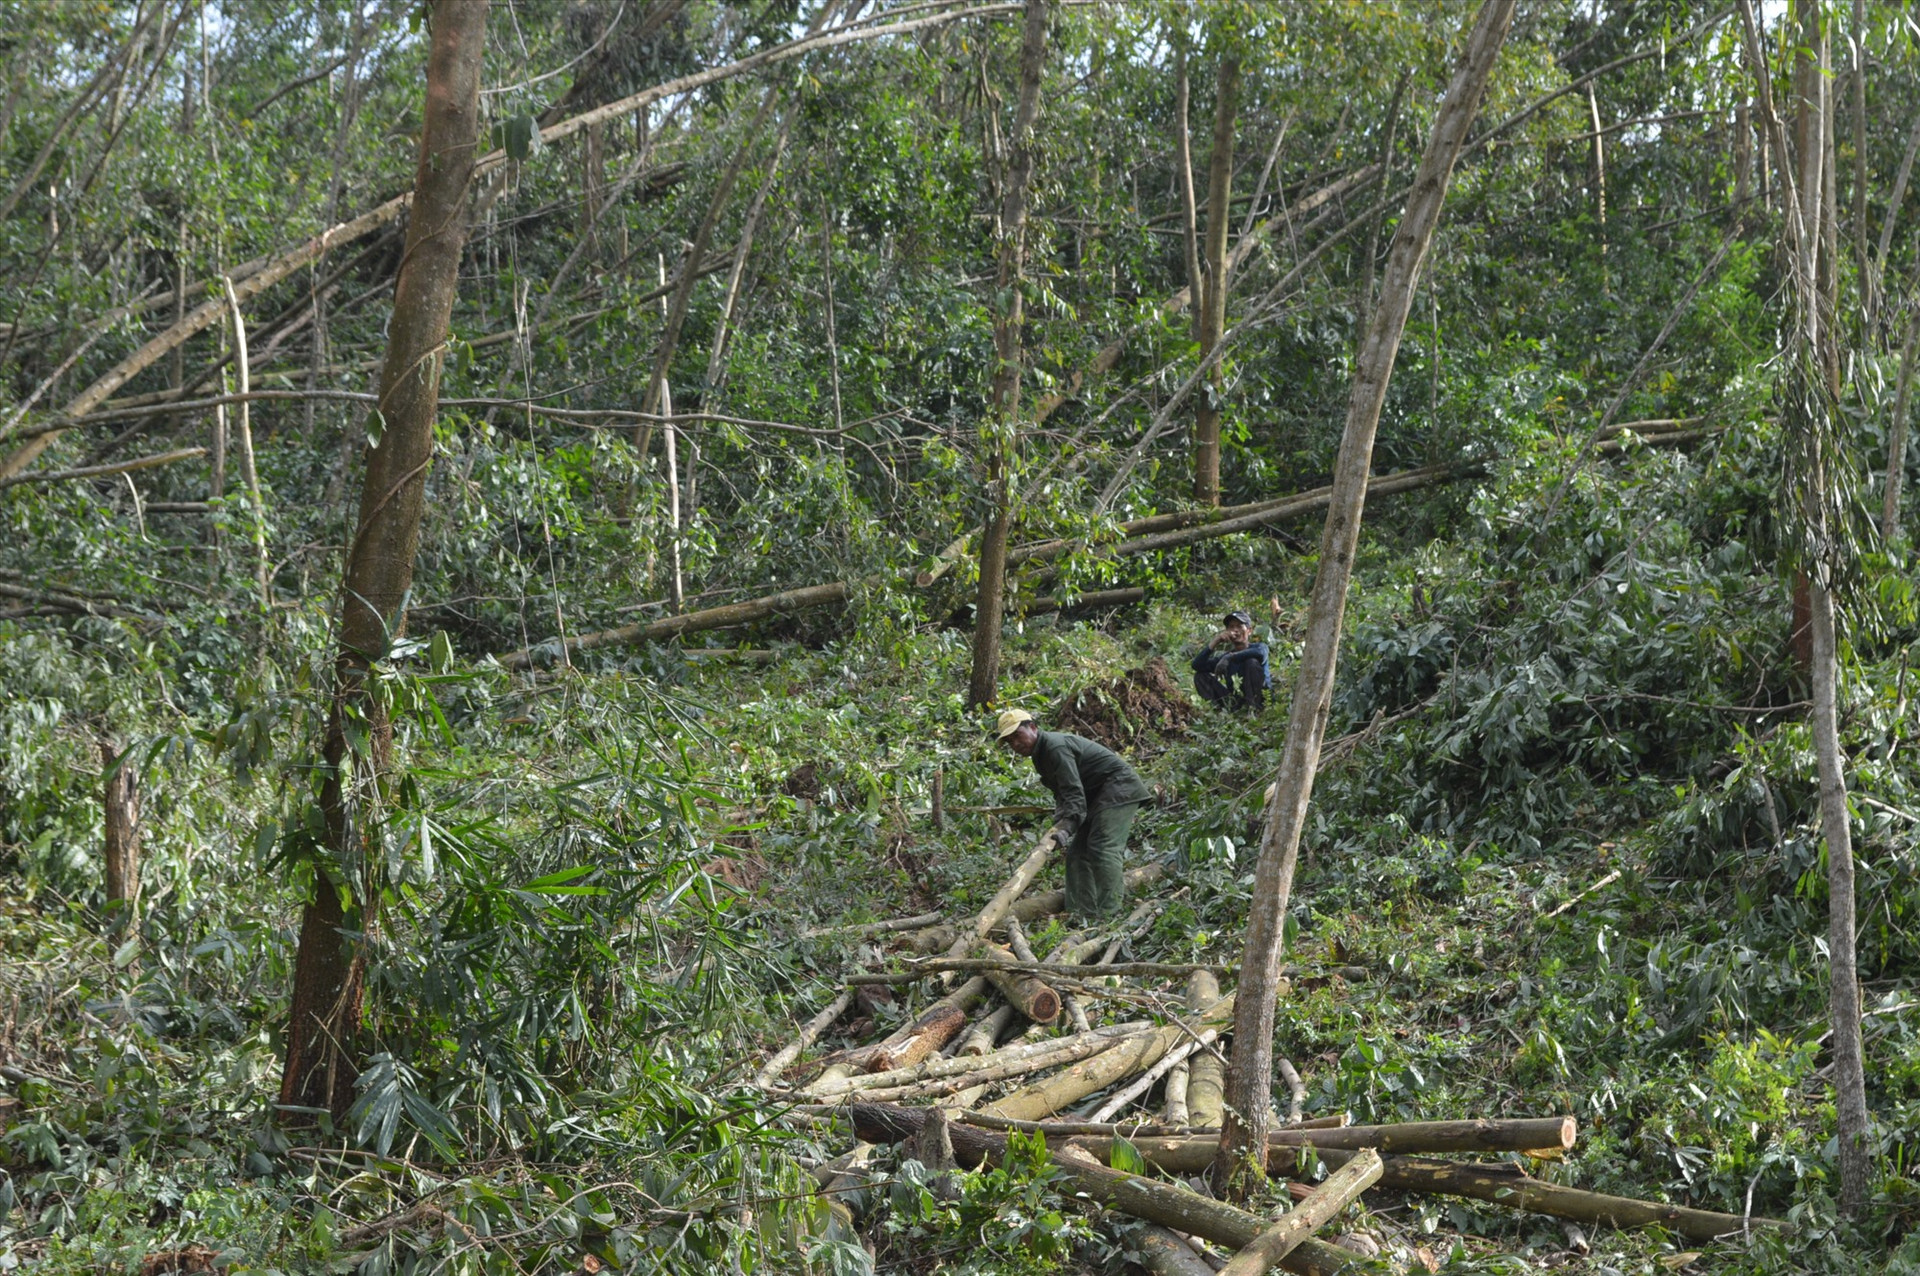 Nông dân gặp khó khăn khi nhiều rừng keo bị ngã đổ do bão số 9. Ảnh: NHAN KHANG